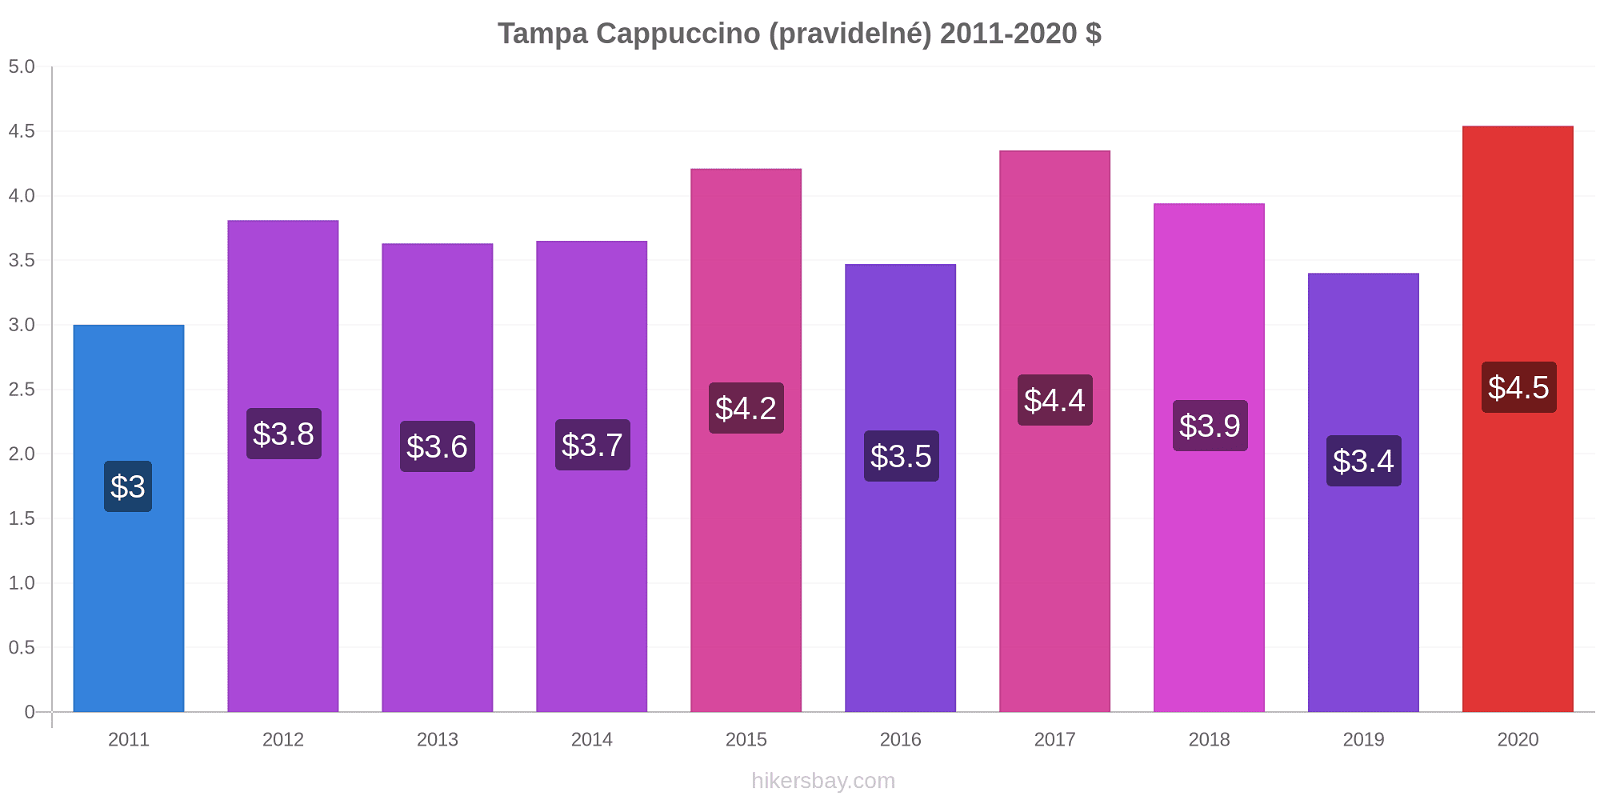 Tampa změny cen Cappuccino (pravidelné) hikersbay.com